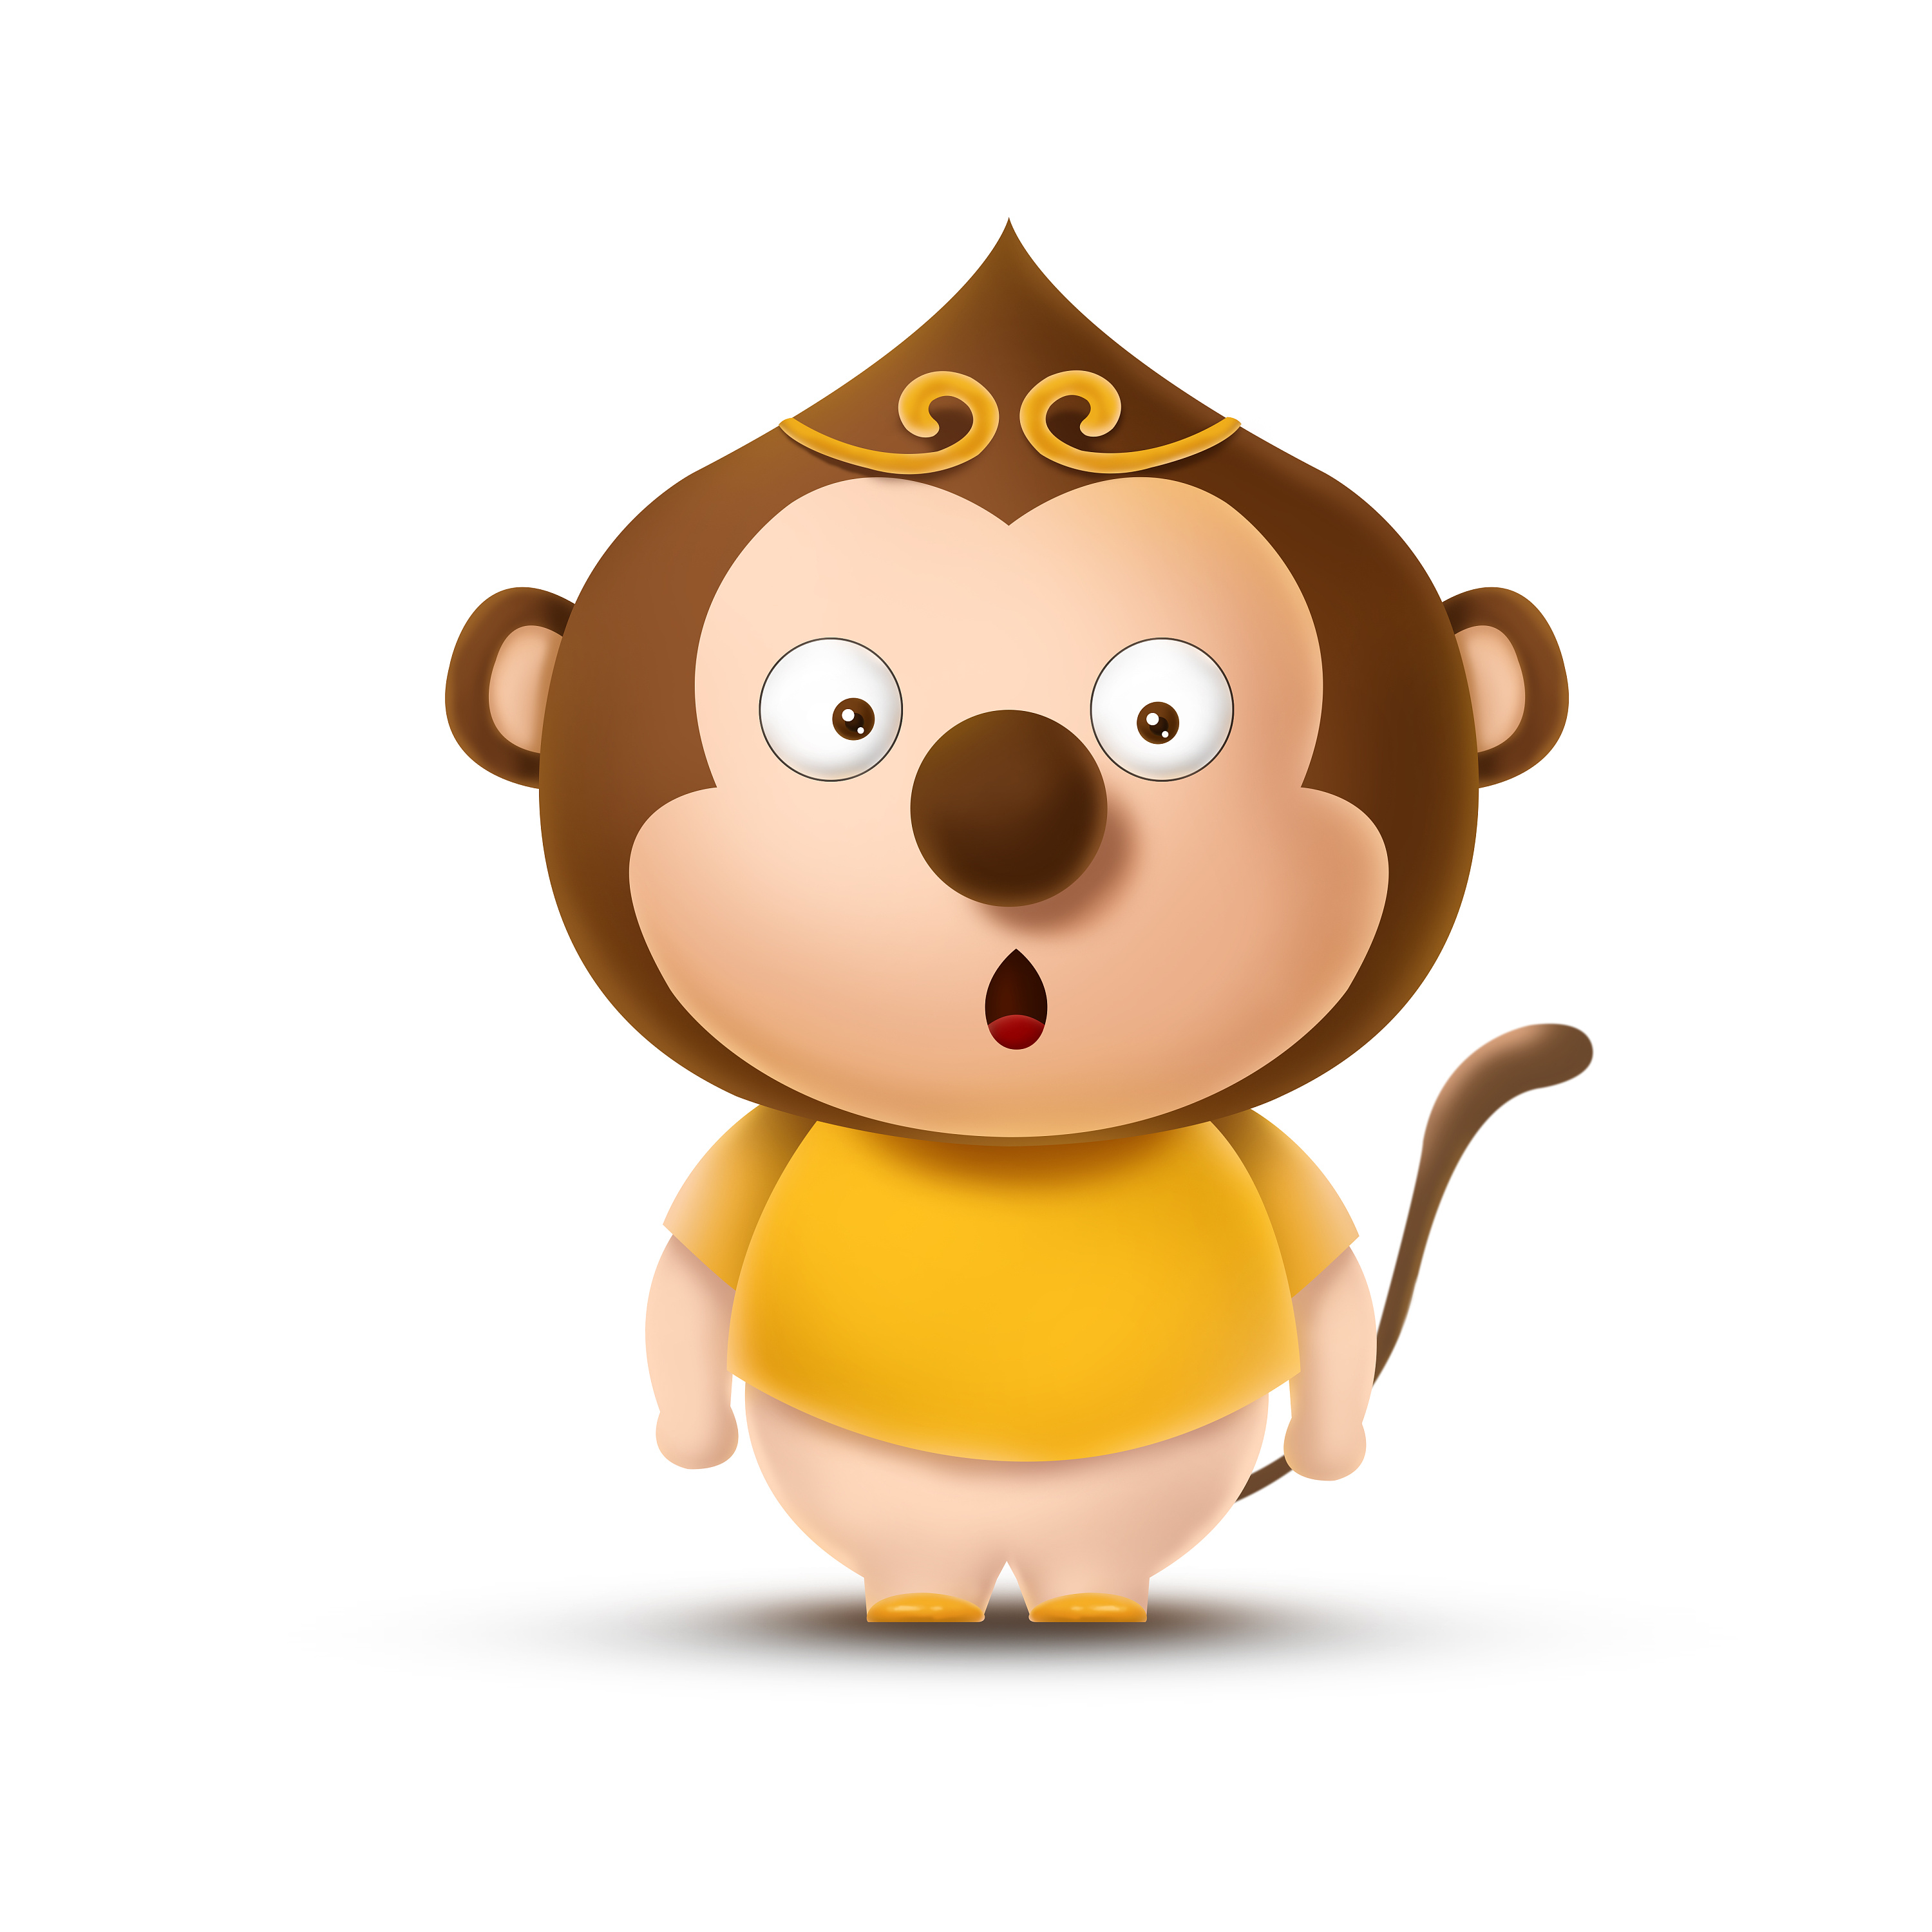 可爱卡通猴子吃香蕉立体矢量图片素材免费下载 - 觅知网